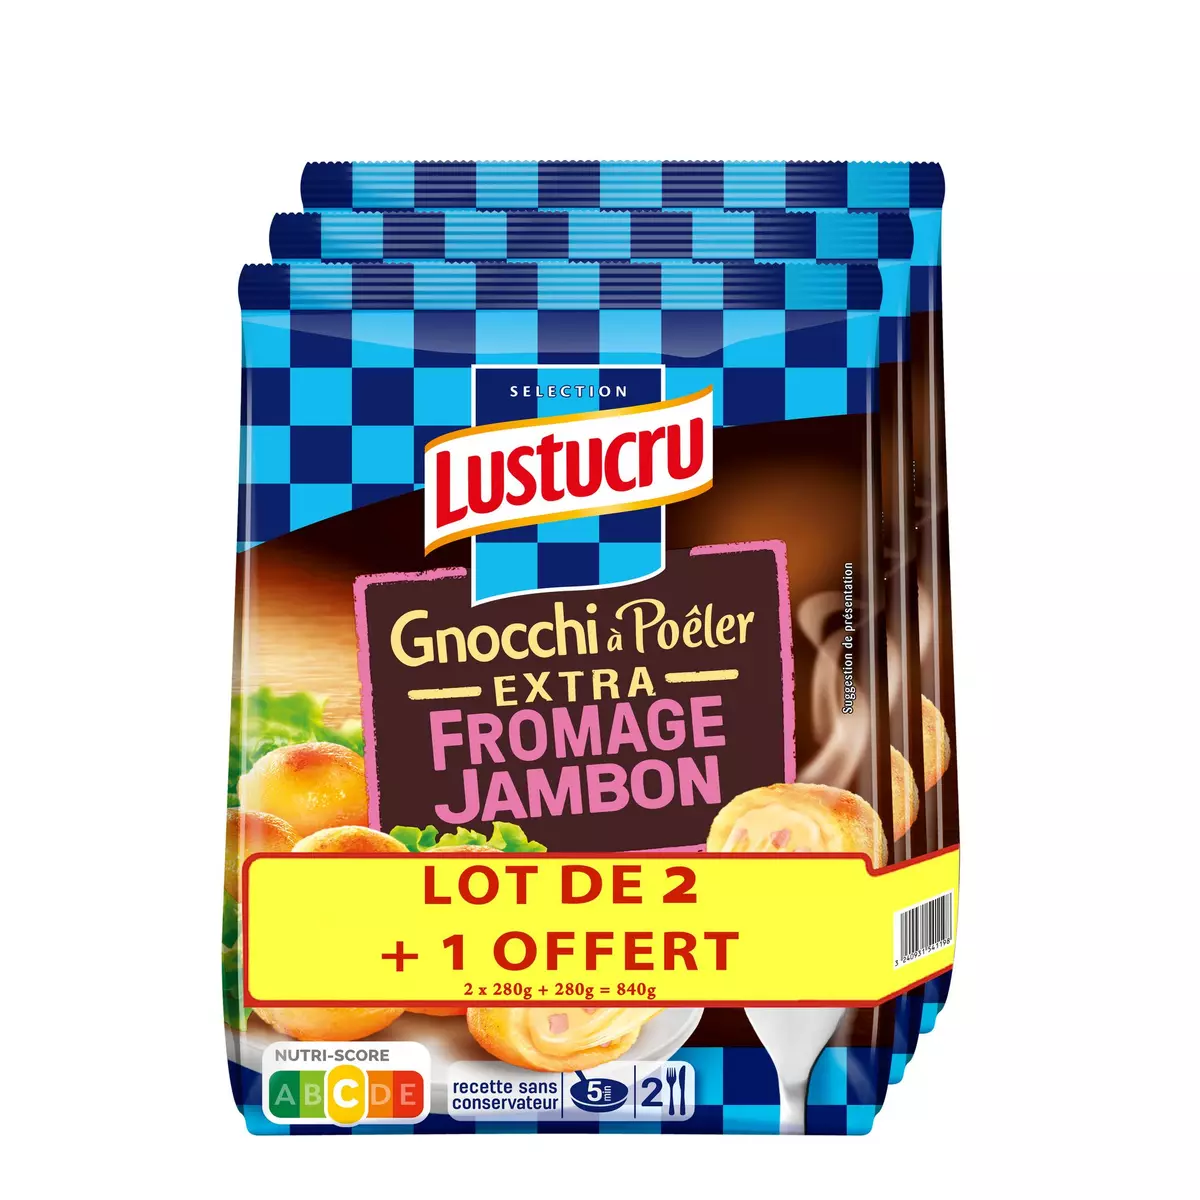 LUSTUCRU Gnocchi à poêler extra fromage jambon 2+1 offert 3x280g